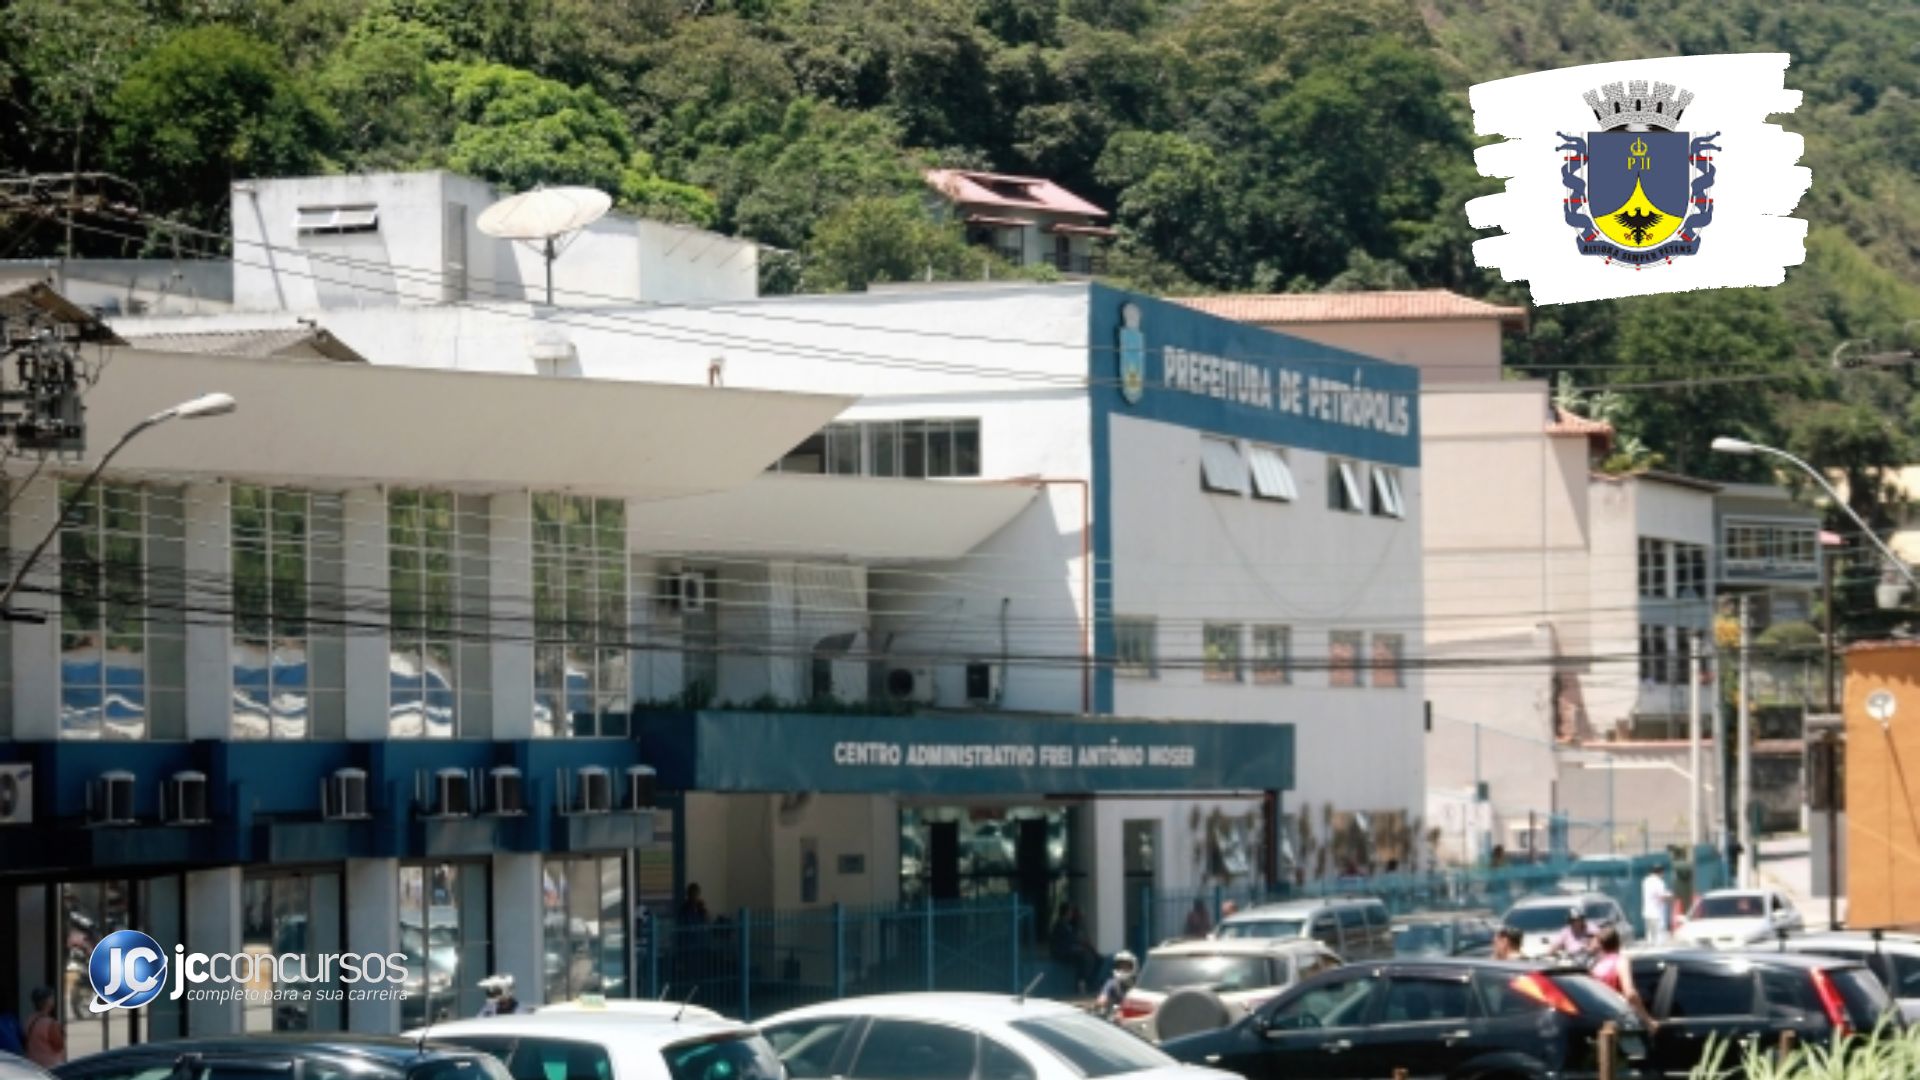 Prefeitura de Nova Petrópolis - Aberto de Xadrez de Nova Petrópolis reuniu  50 enxadristas